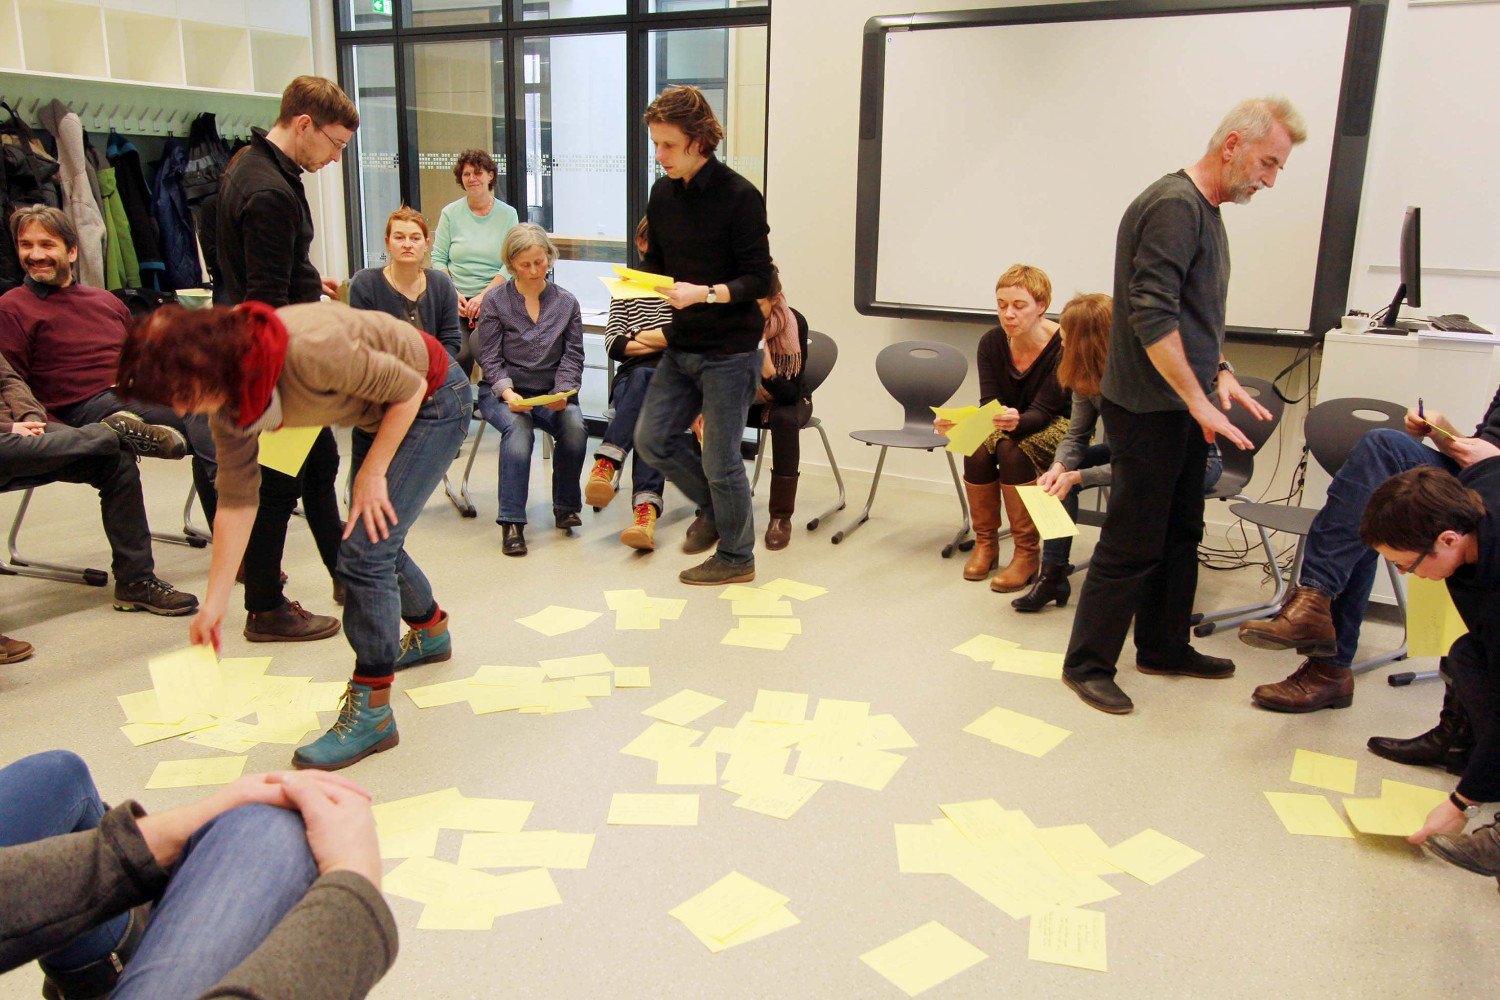 Sitzkreis der Beteiligten im Phase Null Prozess. Gelbe Zettel liegen auf dem Boden. In der Mitte des Kreises sind Tobias Haag und Walter Heilmann zu sehen.